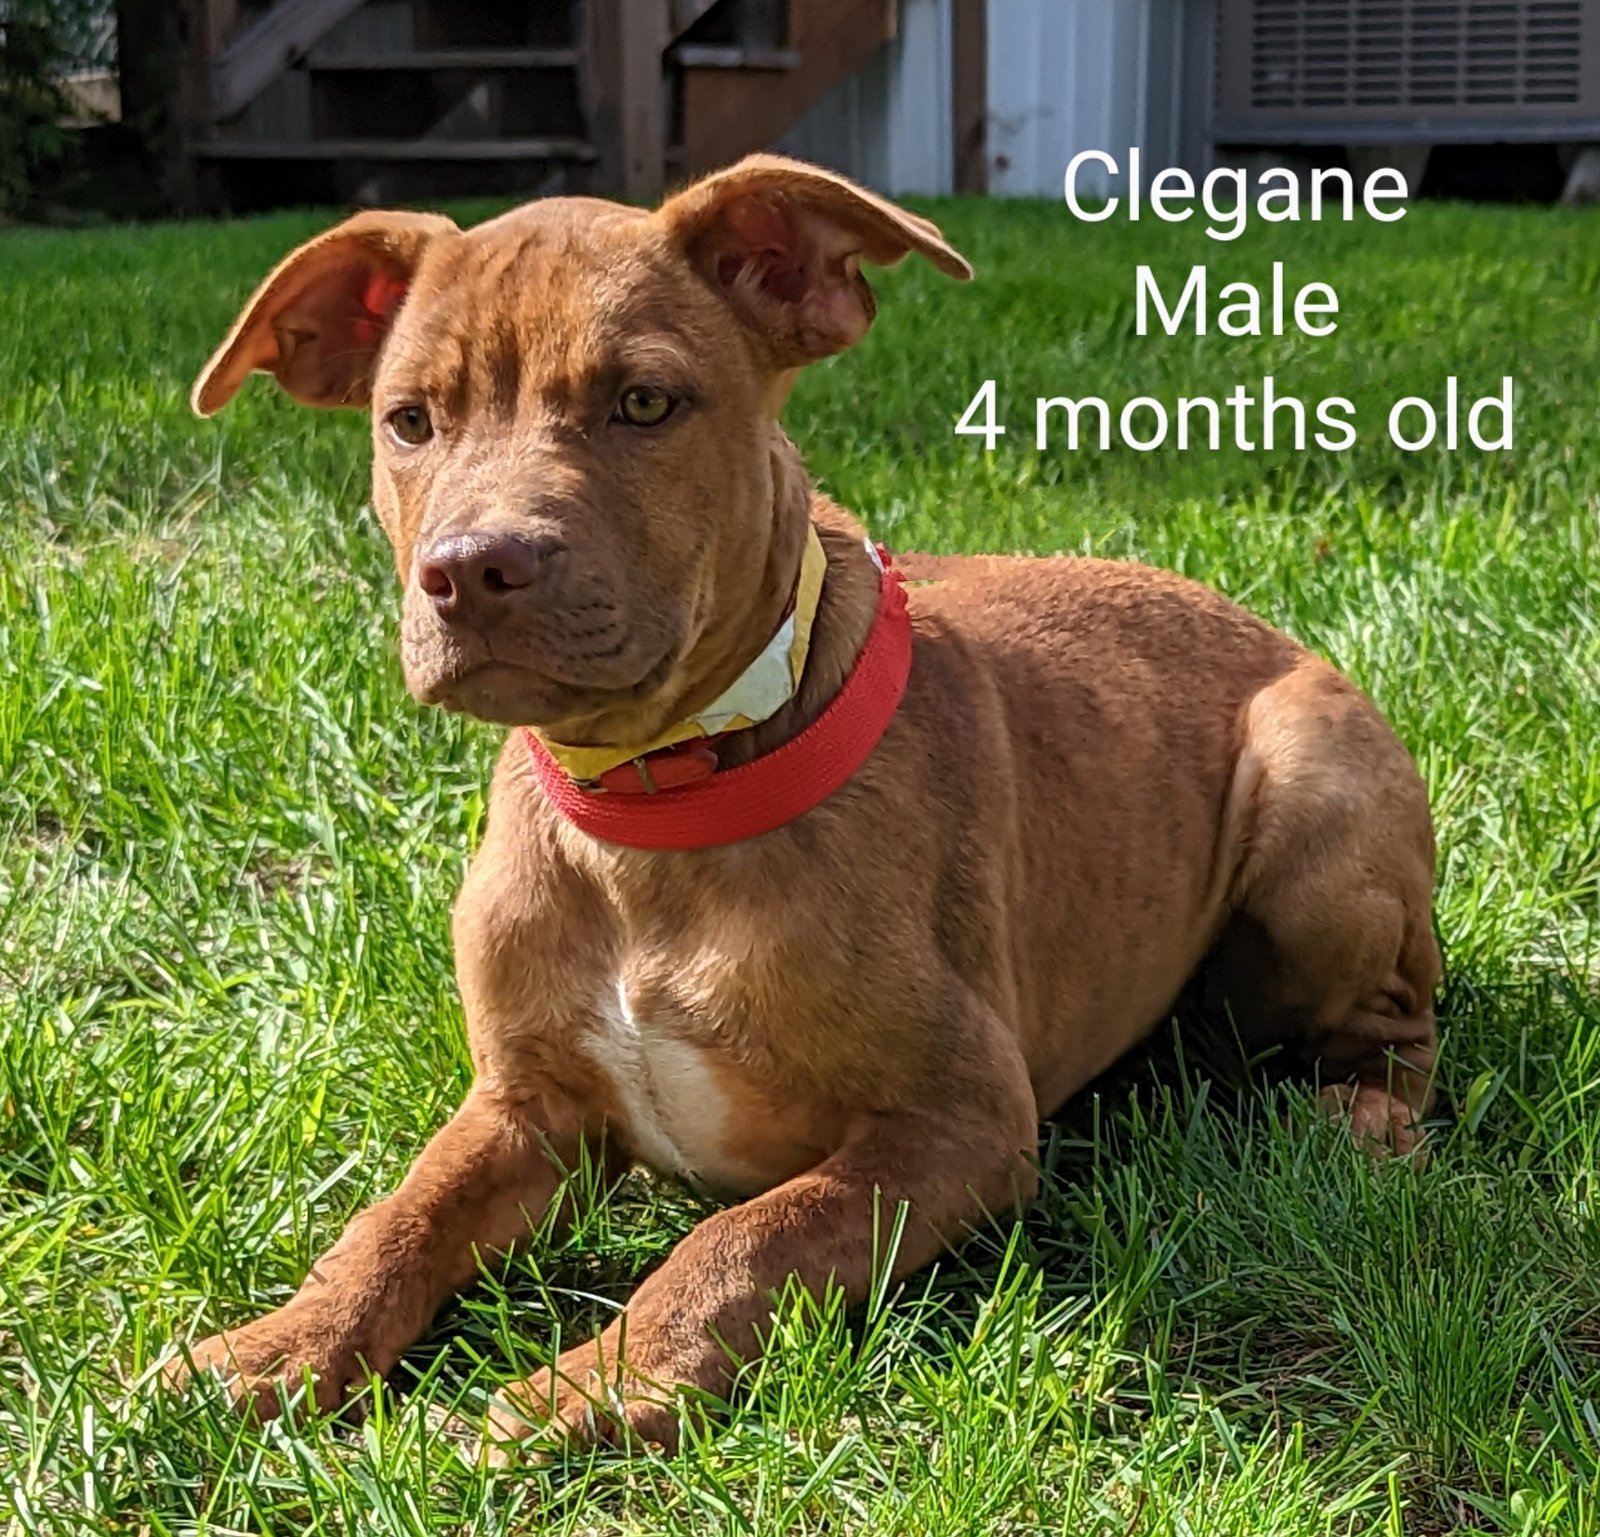 Clegane - Hound mix - 4 months old